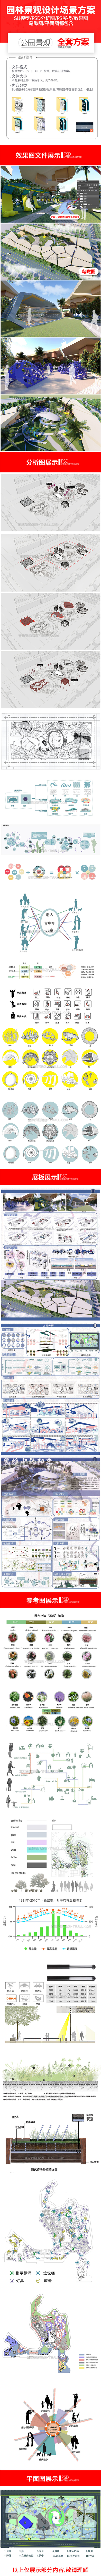 全套商业广场公园设计方案PSD源文件效果展板鸟瞰图分析图SU模型 设计素材 第2张